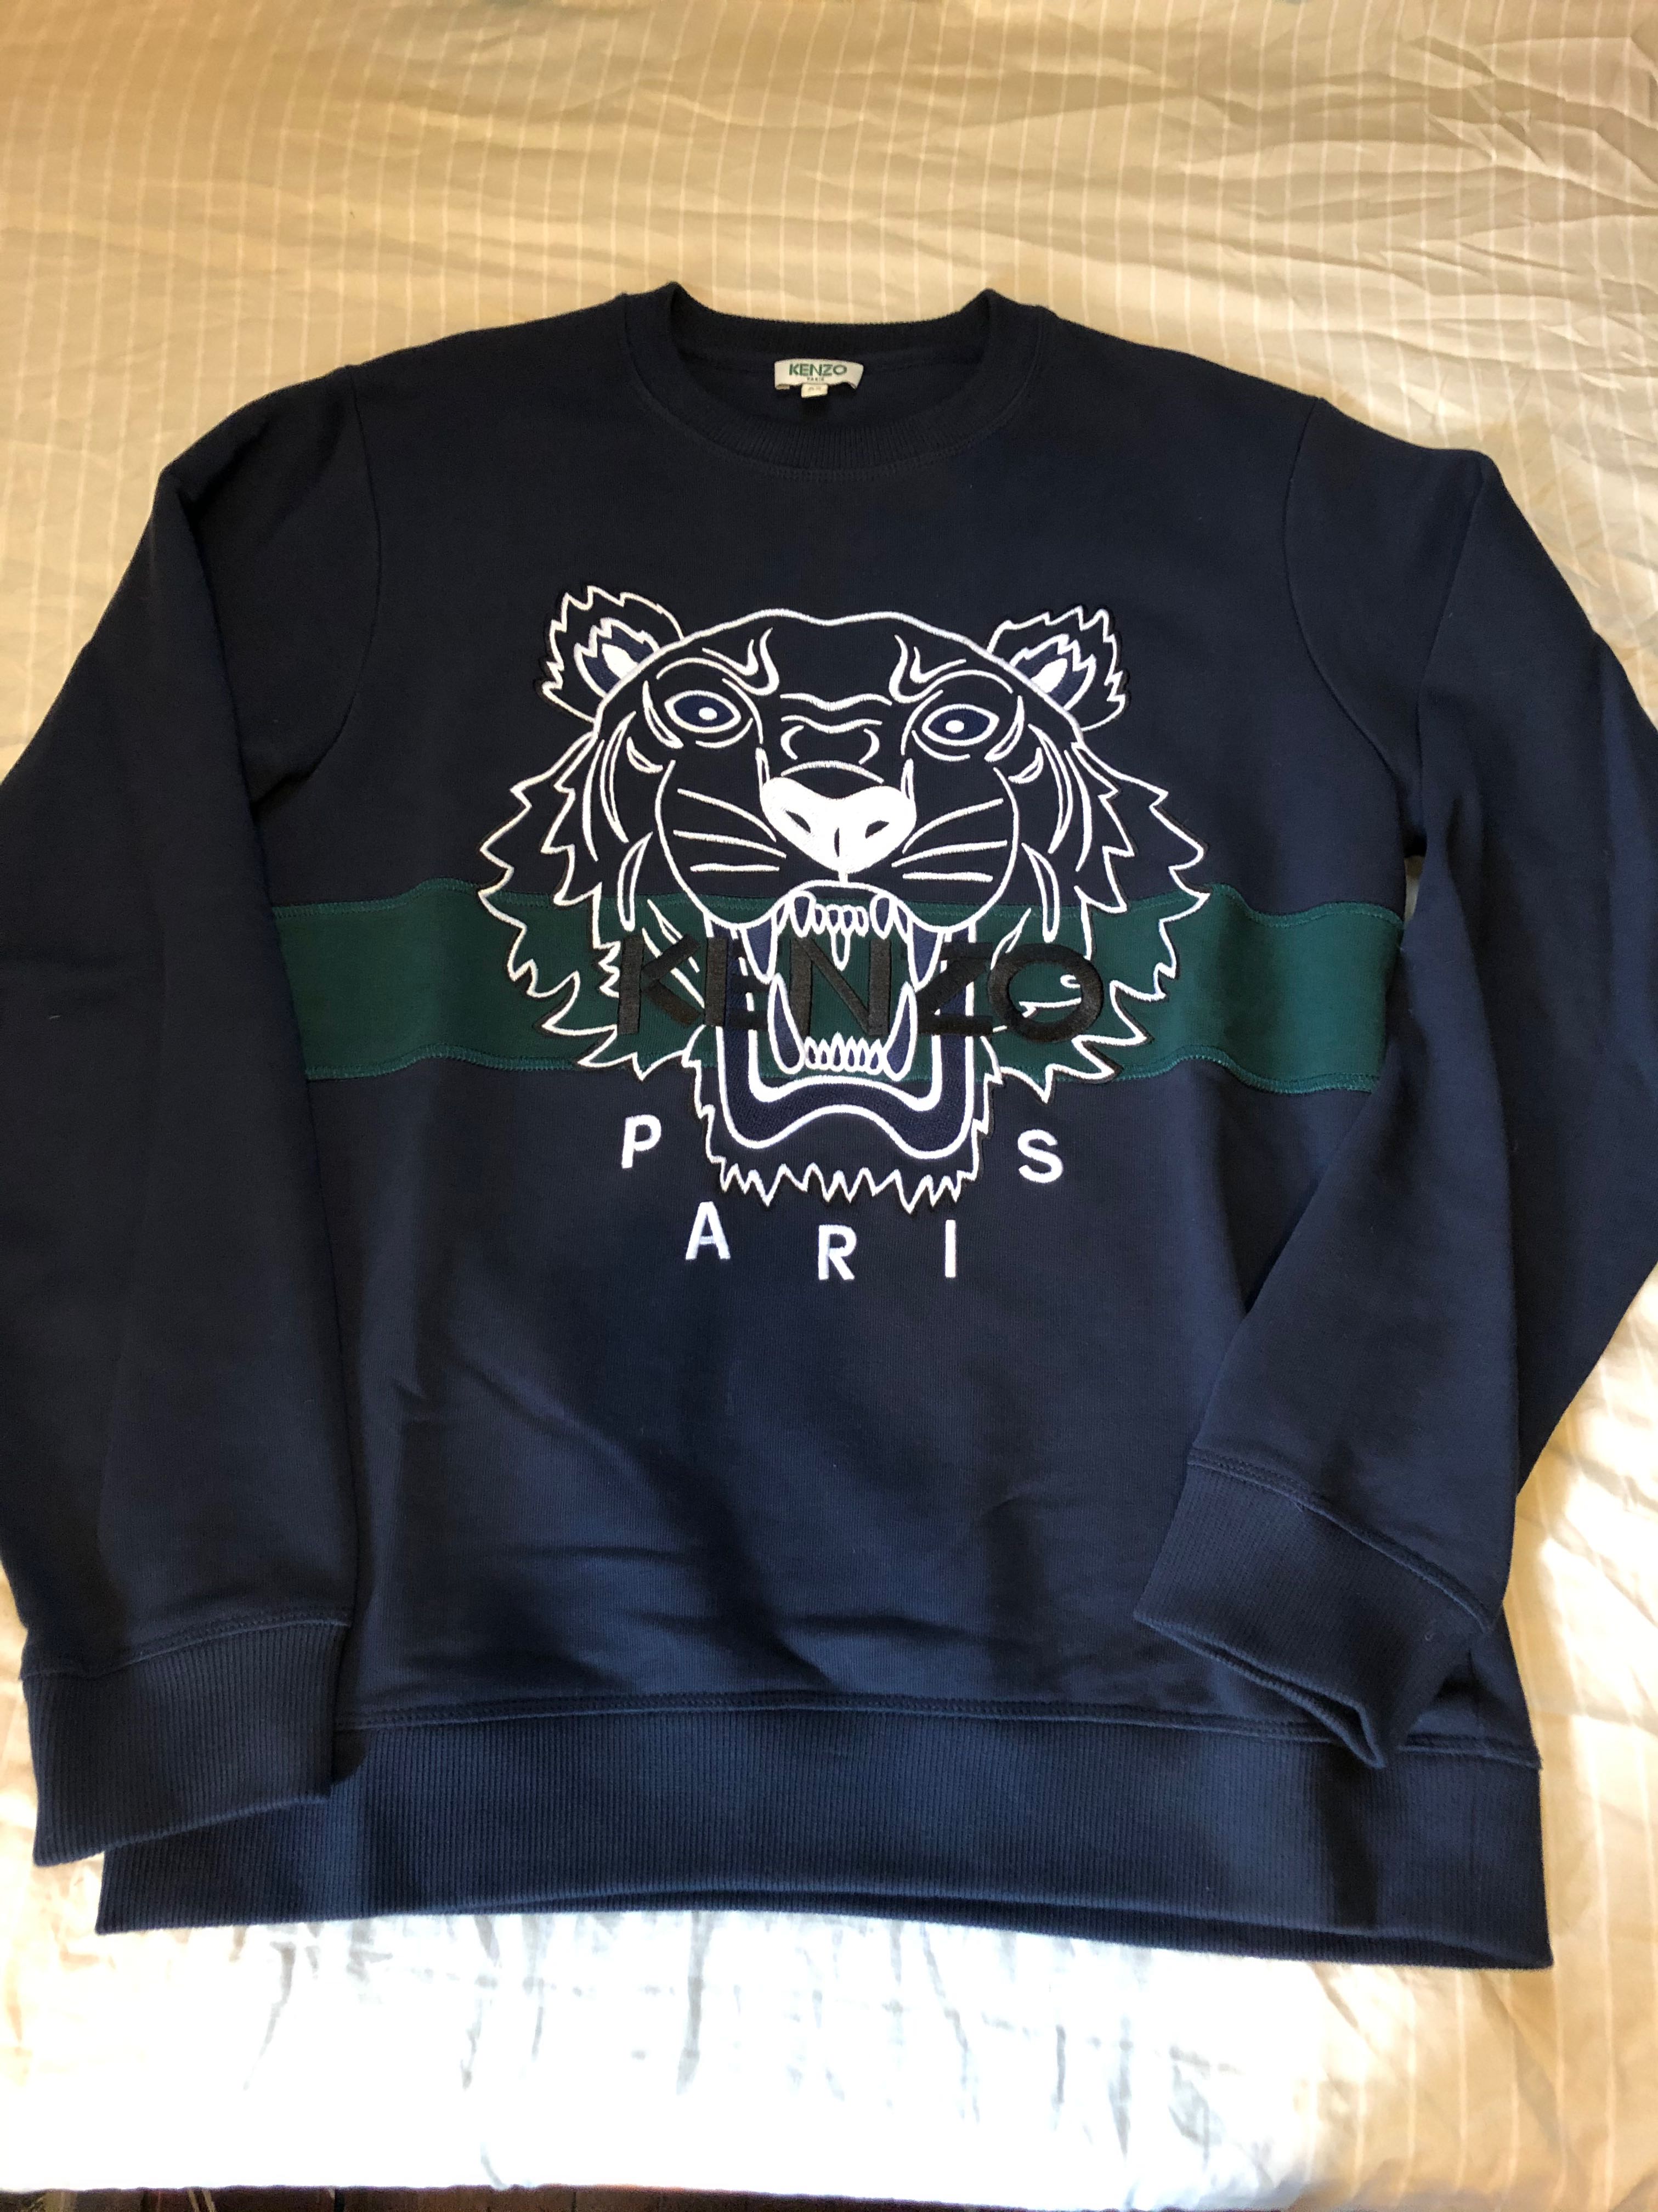 Kenzo sweatshirt - NOT Givenchy 